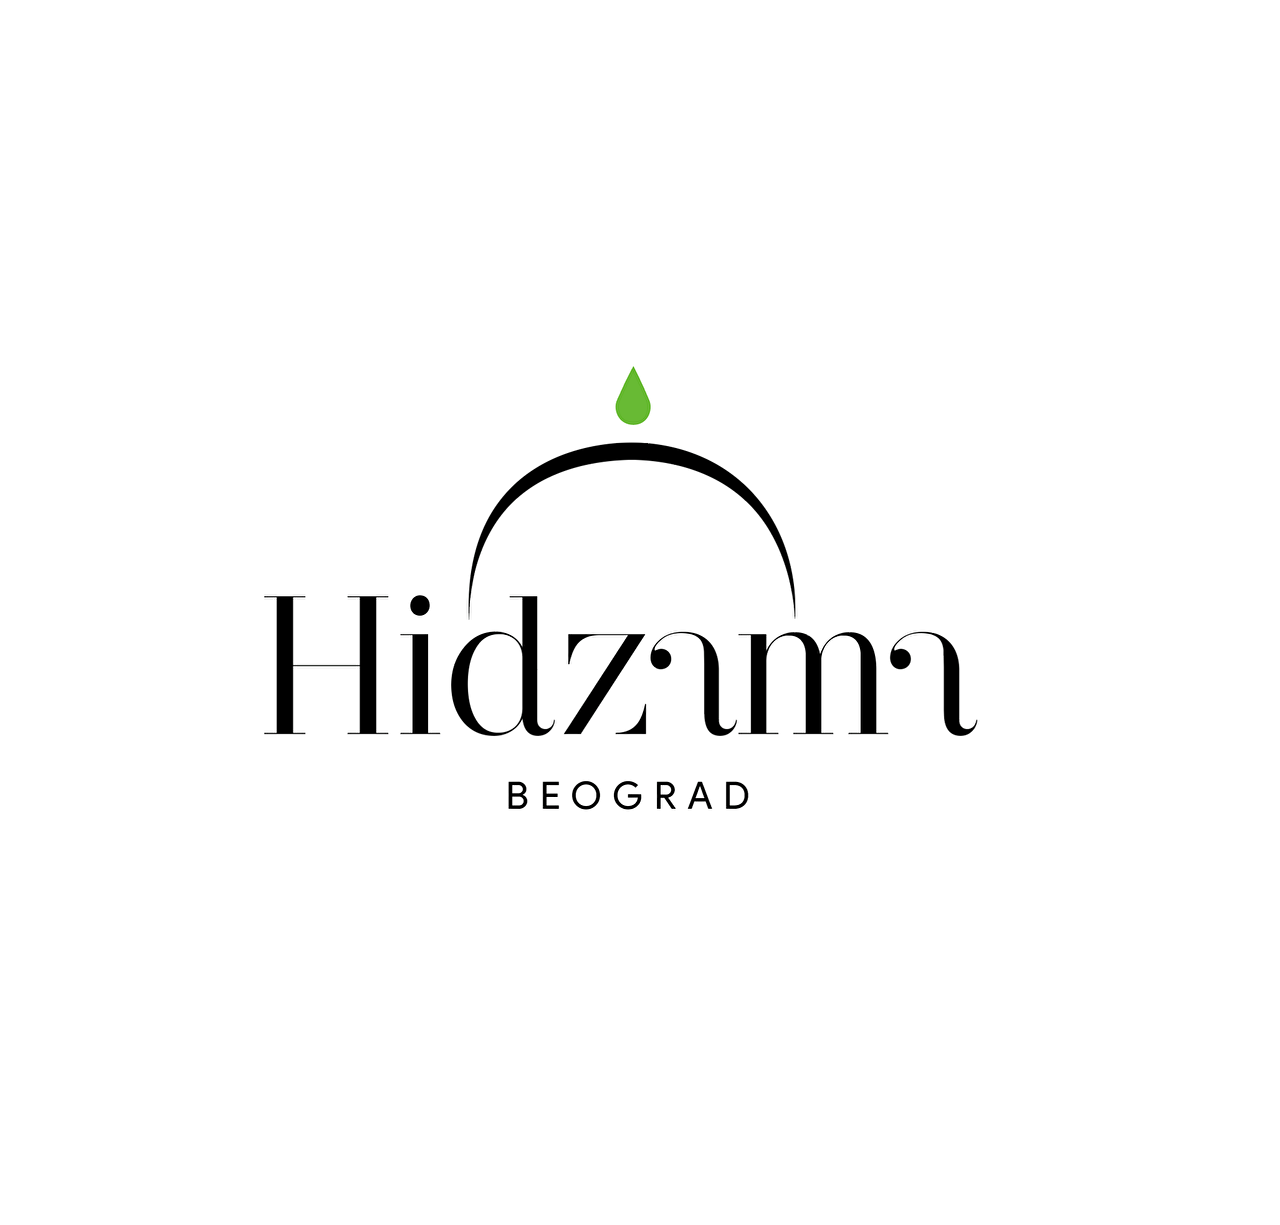 hidzama_moj_logo2.png